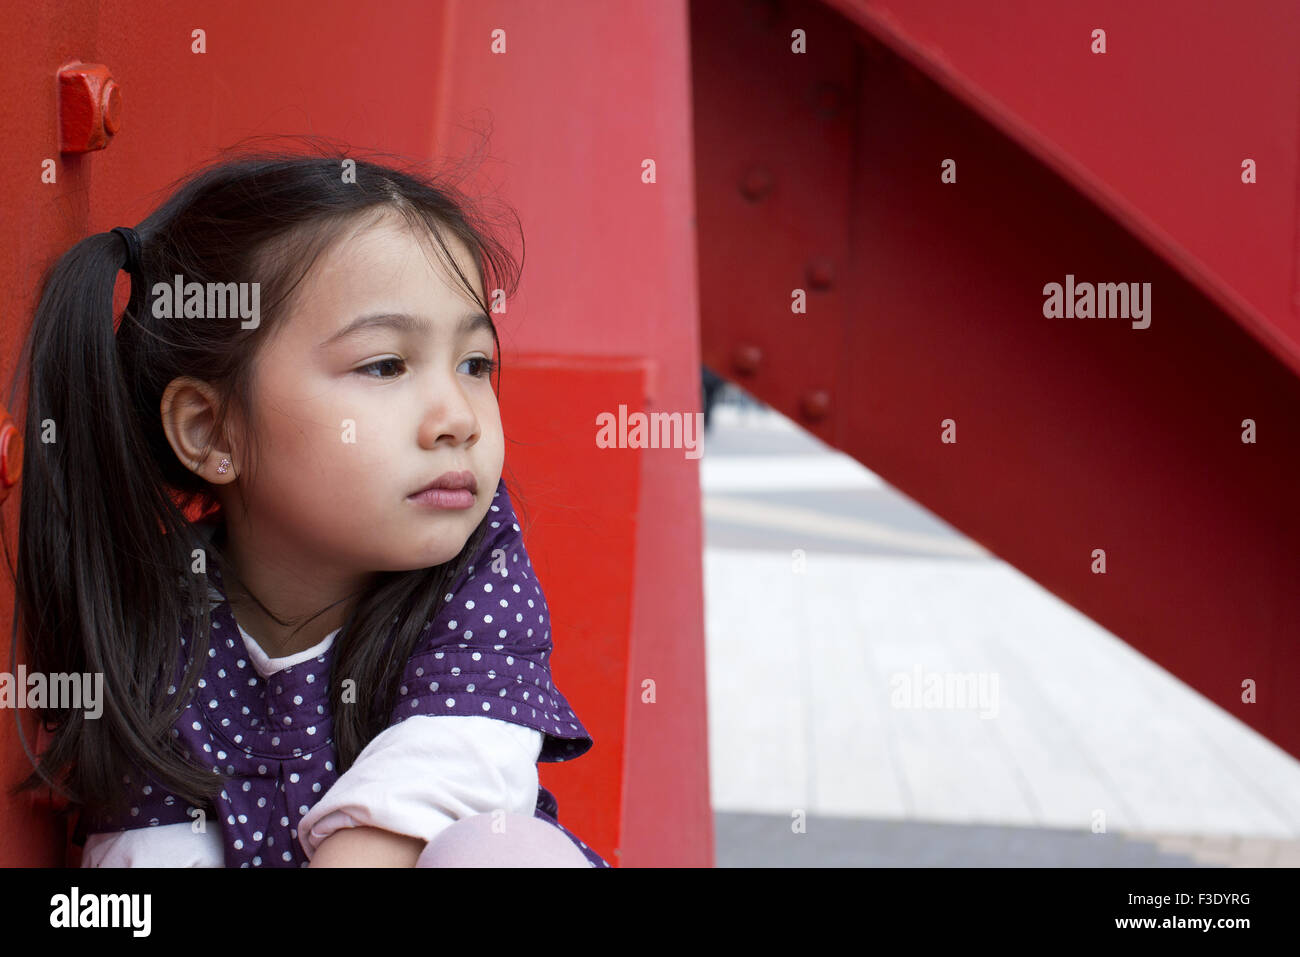 Little girl looking lejos con aspecto de decepción Foto de stock